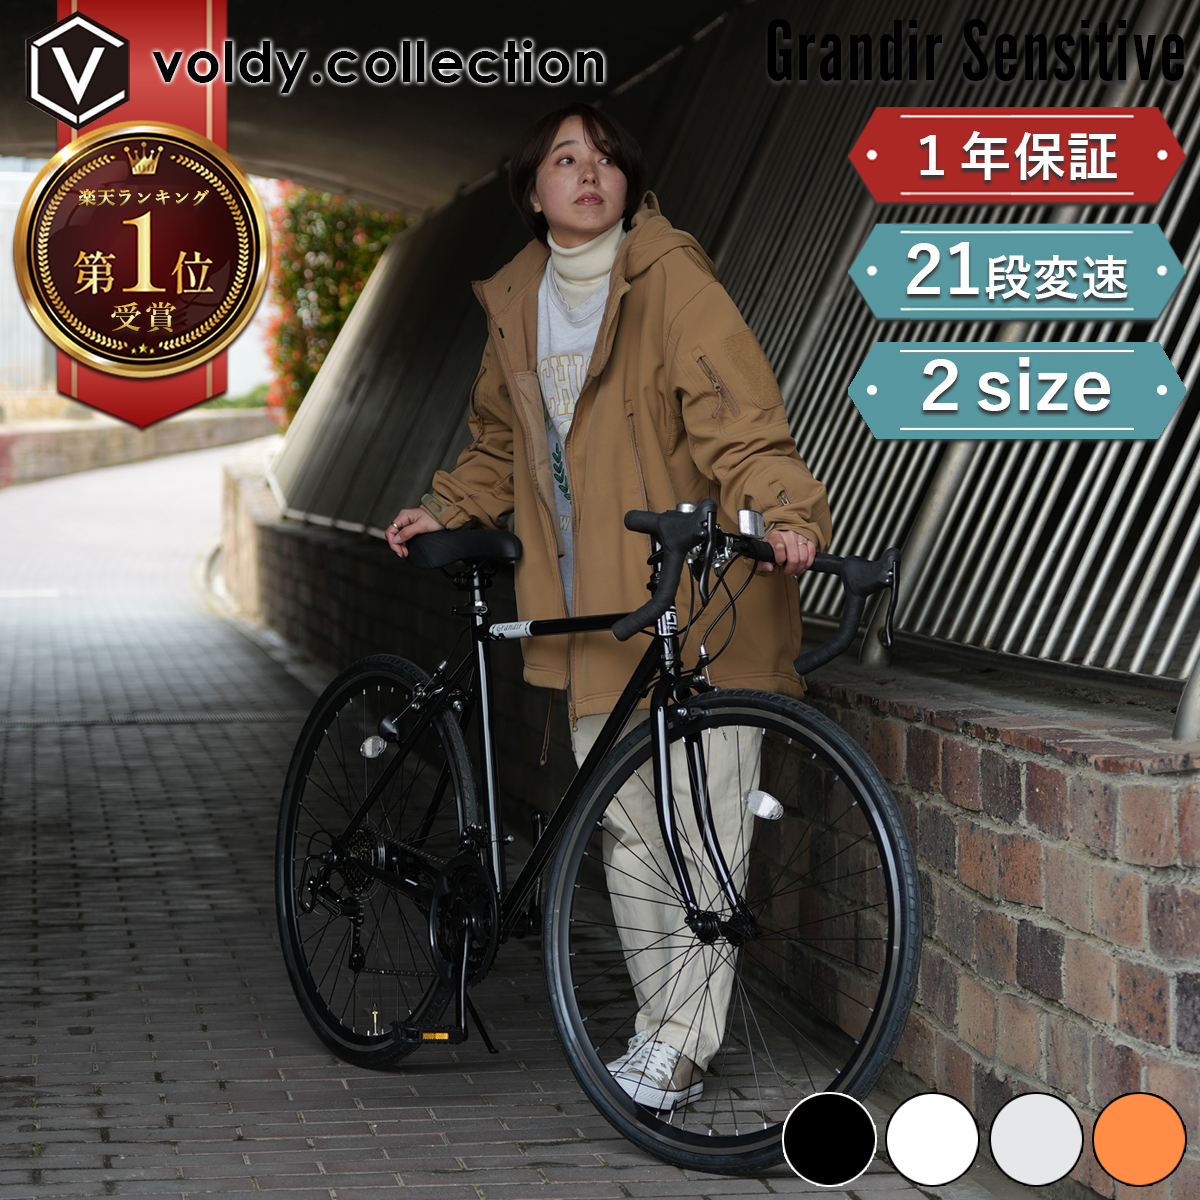 ロードバイク 初心者 女性 自転車 700×28C 21段変速 2サイズフレーム 軽量 軽い 安い グランディール センシティブ Grandir  Sensitive